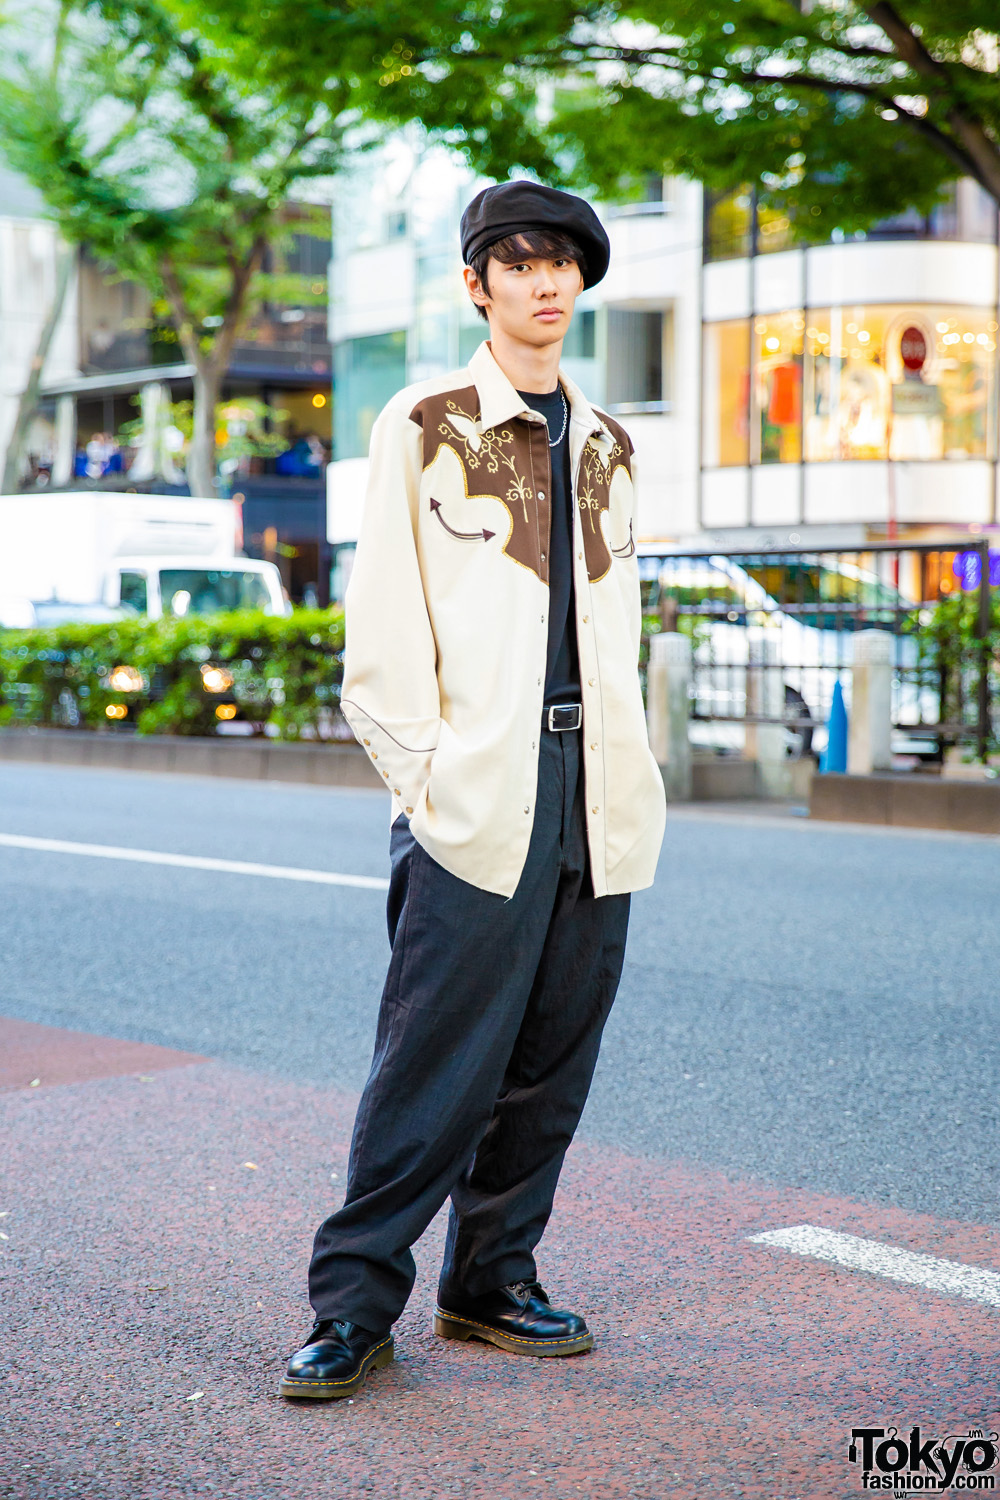 Tokyo Street Style: Men's Leggings Under Shorts